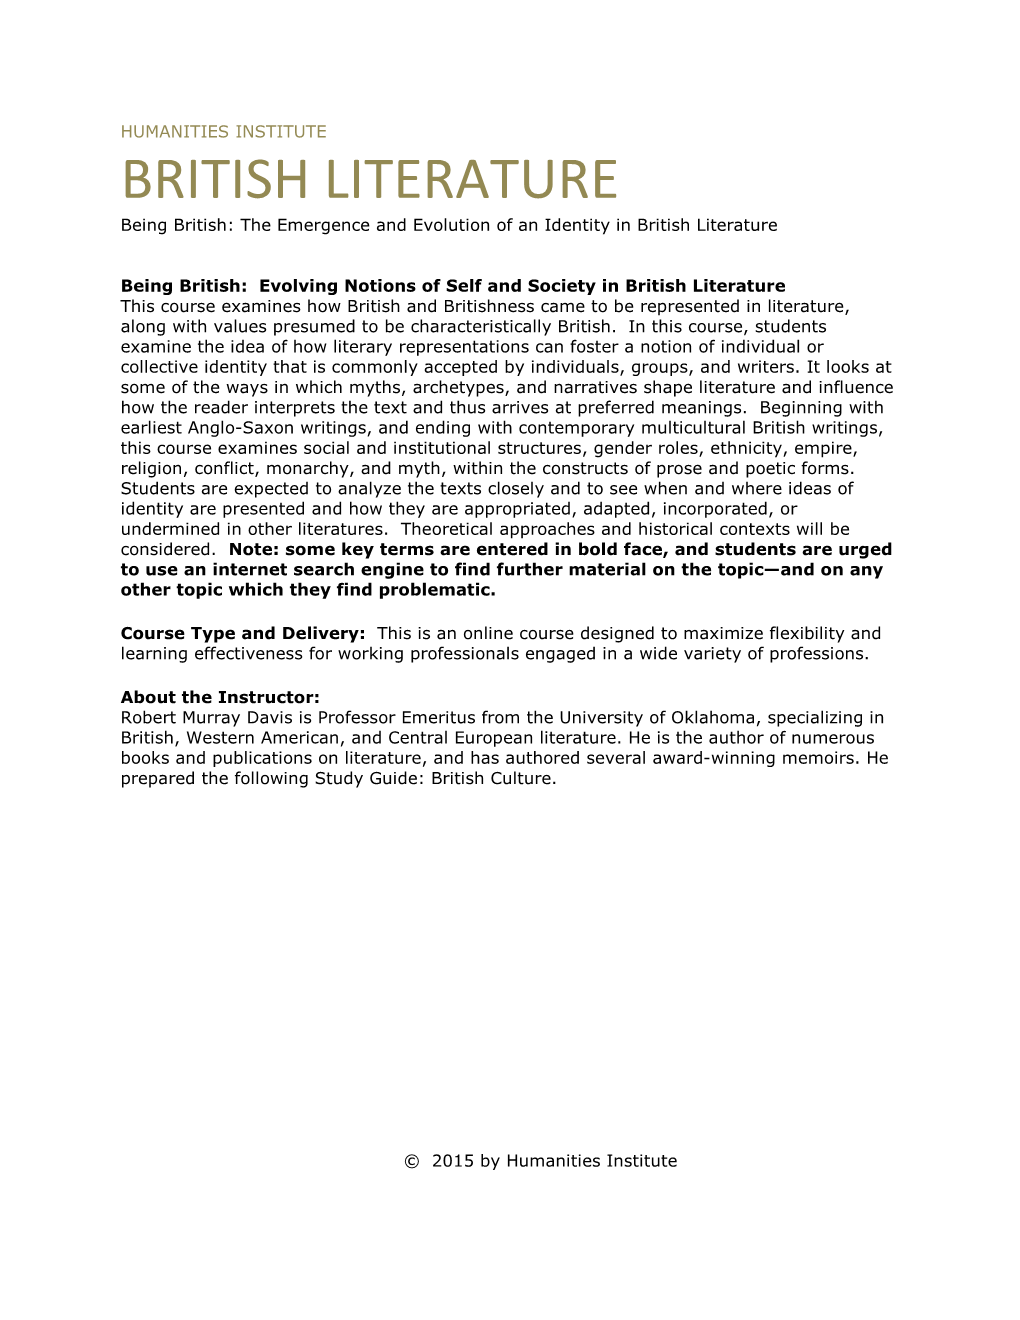 BRITISH LITERATURE Being British: the Emergence and Evolution of an Identity in British Literature